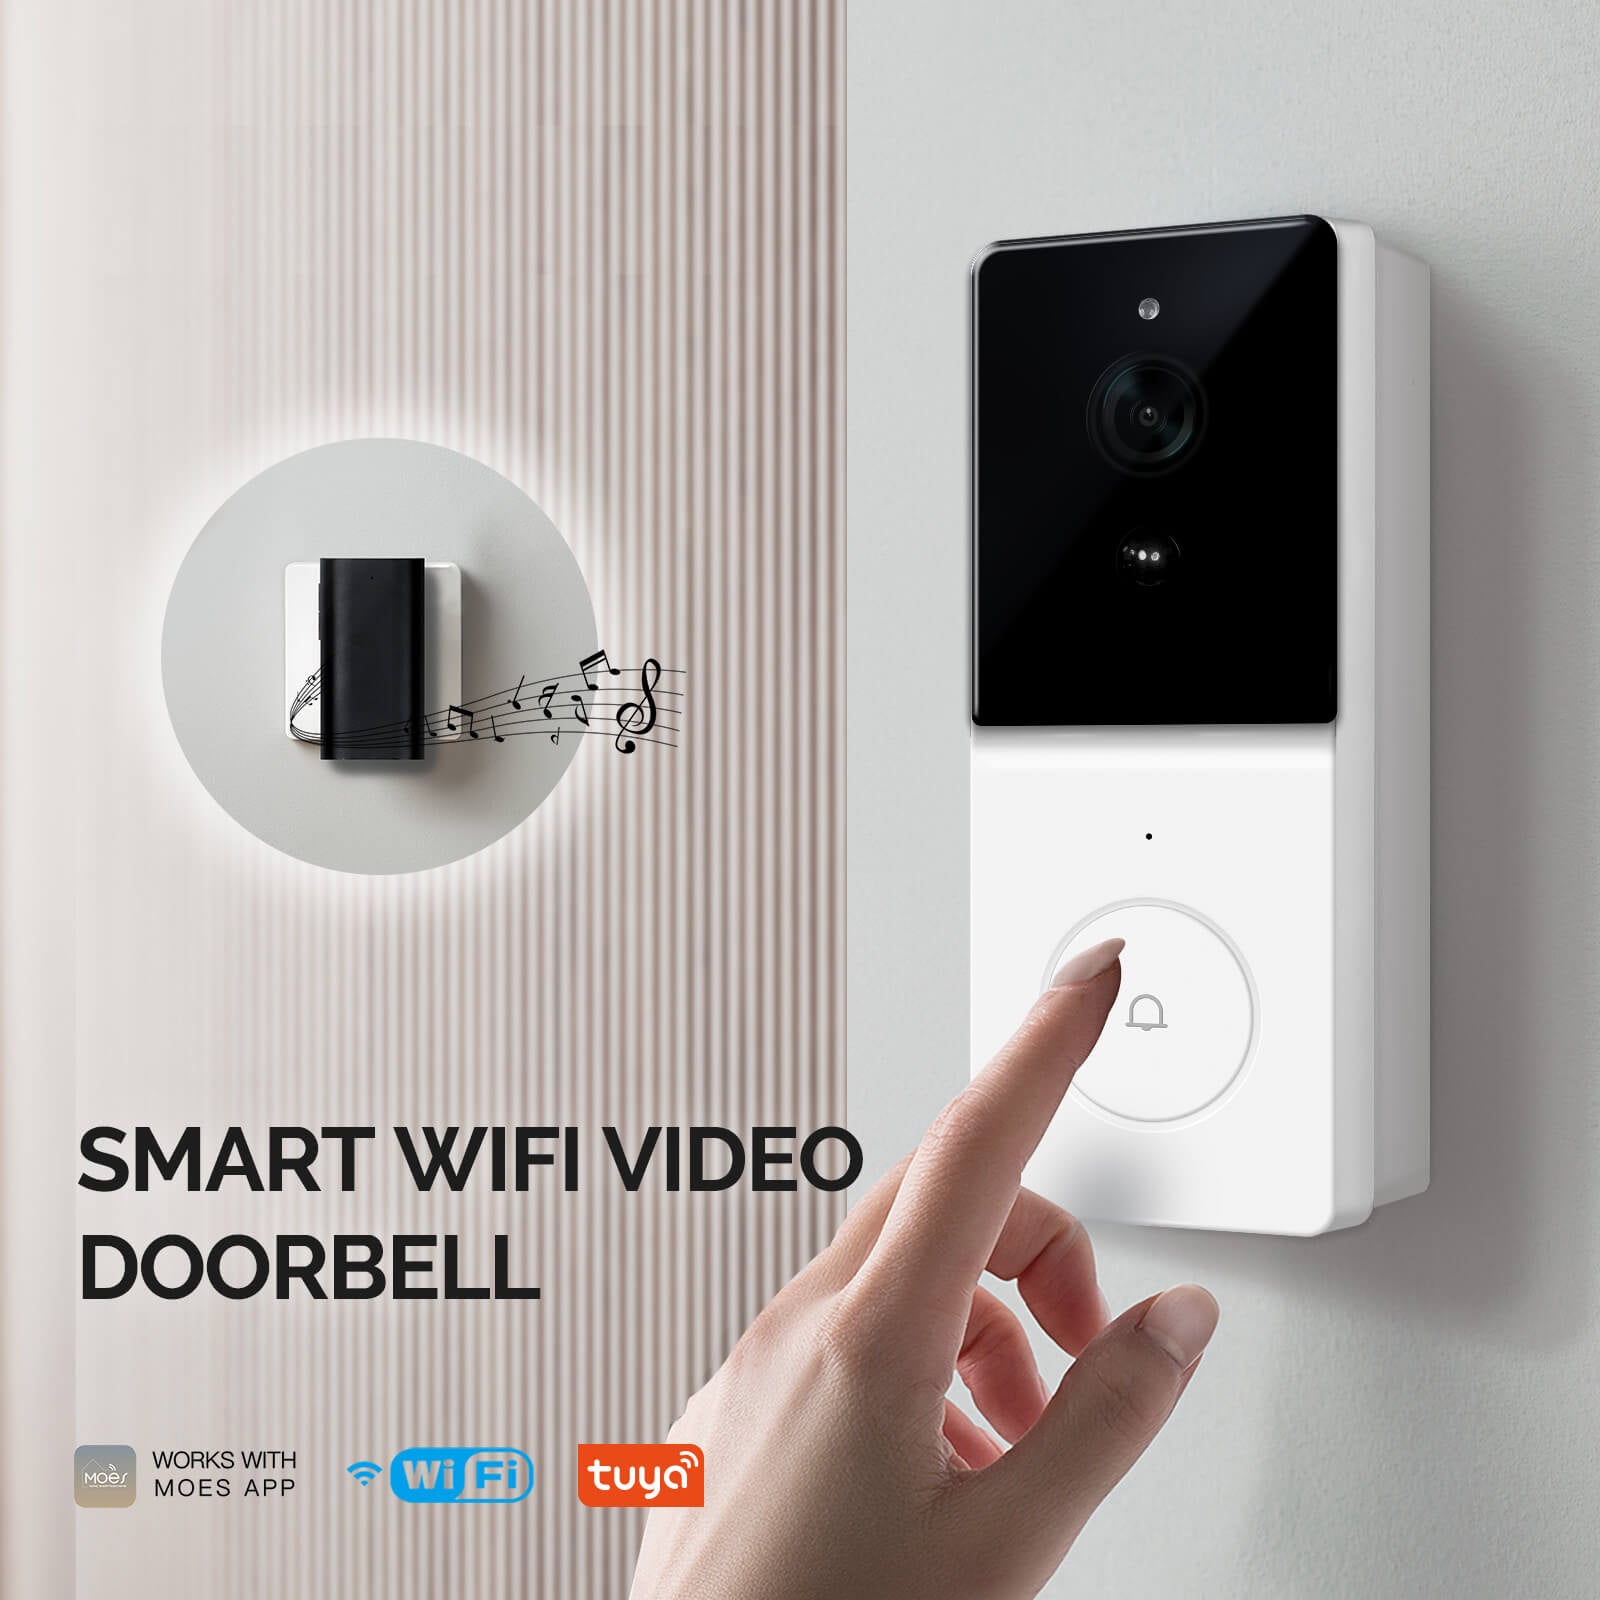 Smart wifi video doorbell - MOES